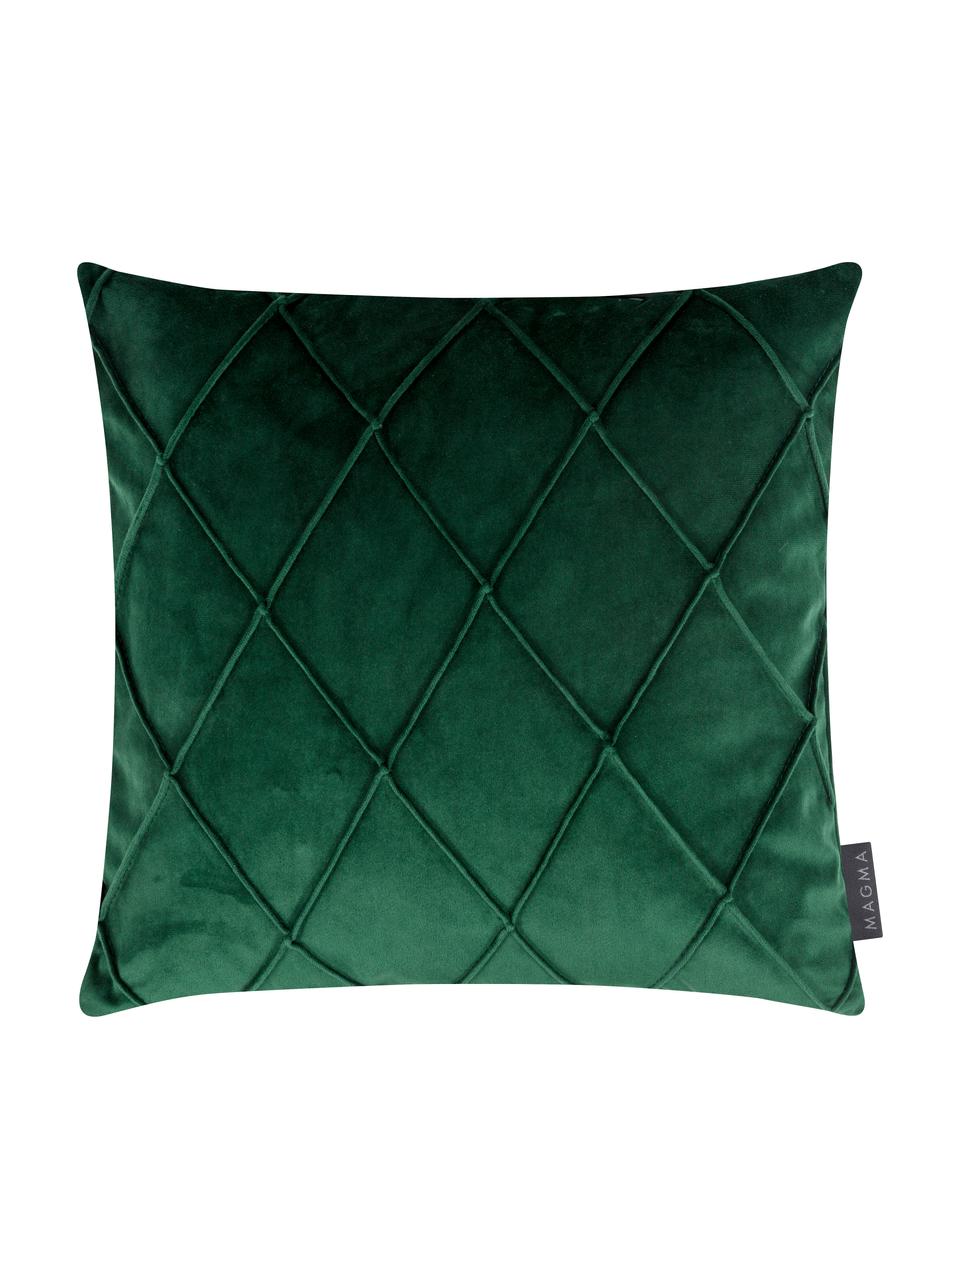 Samt-Kissenhülle Nobless in Grün mit erhabenem Rautenmuster, 100% Polyestersamt, Grün, 50 x 50 cm